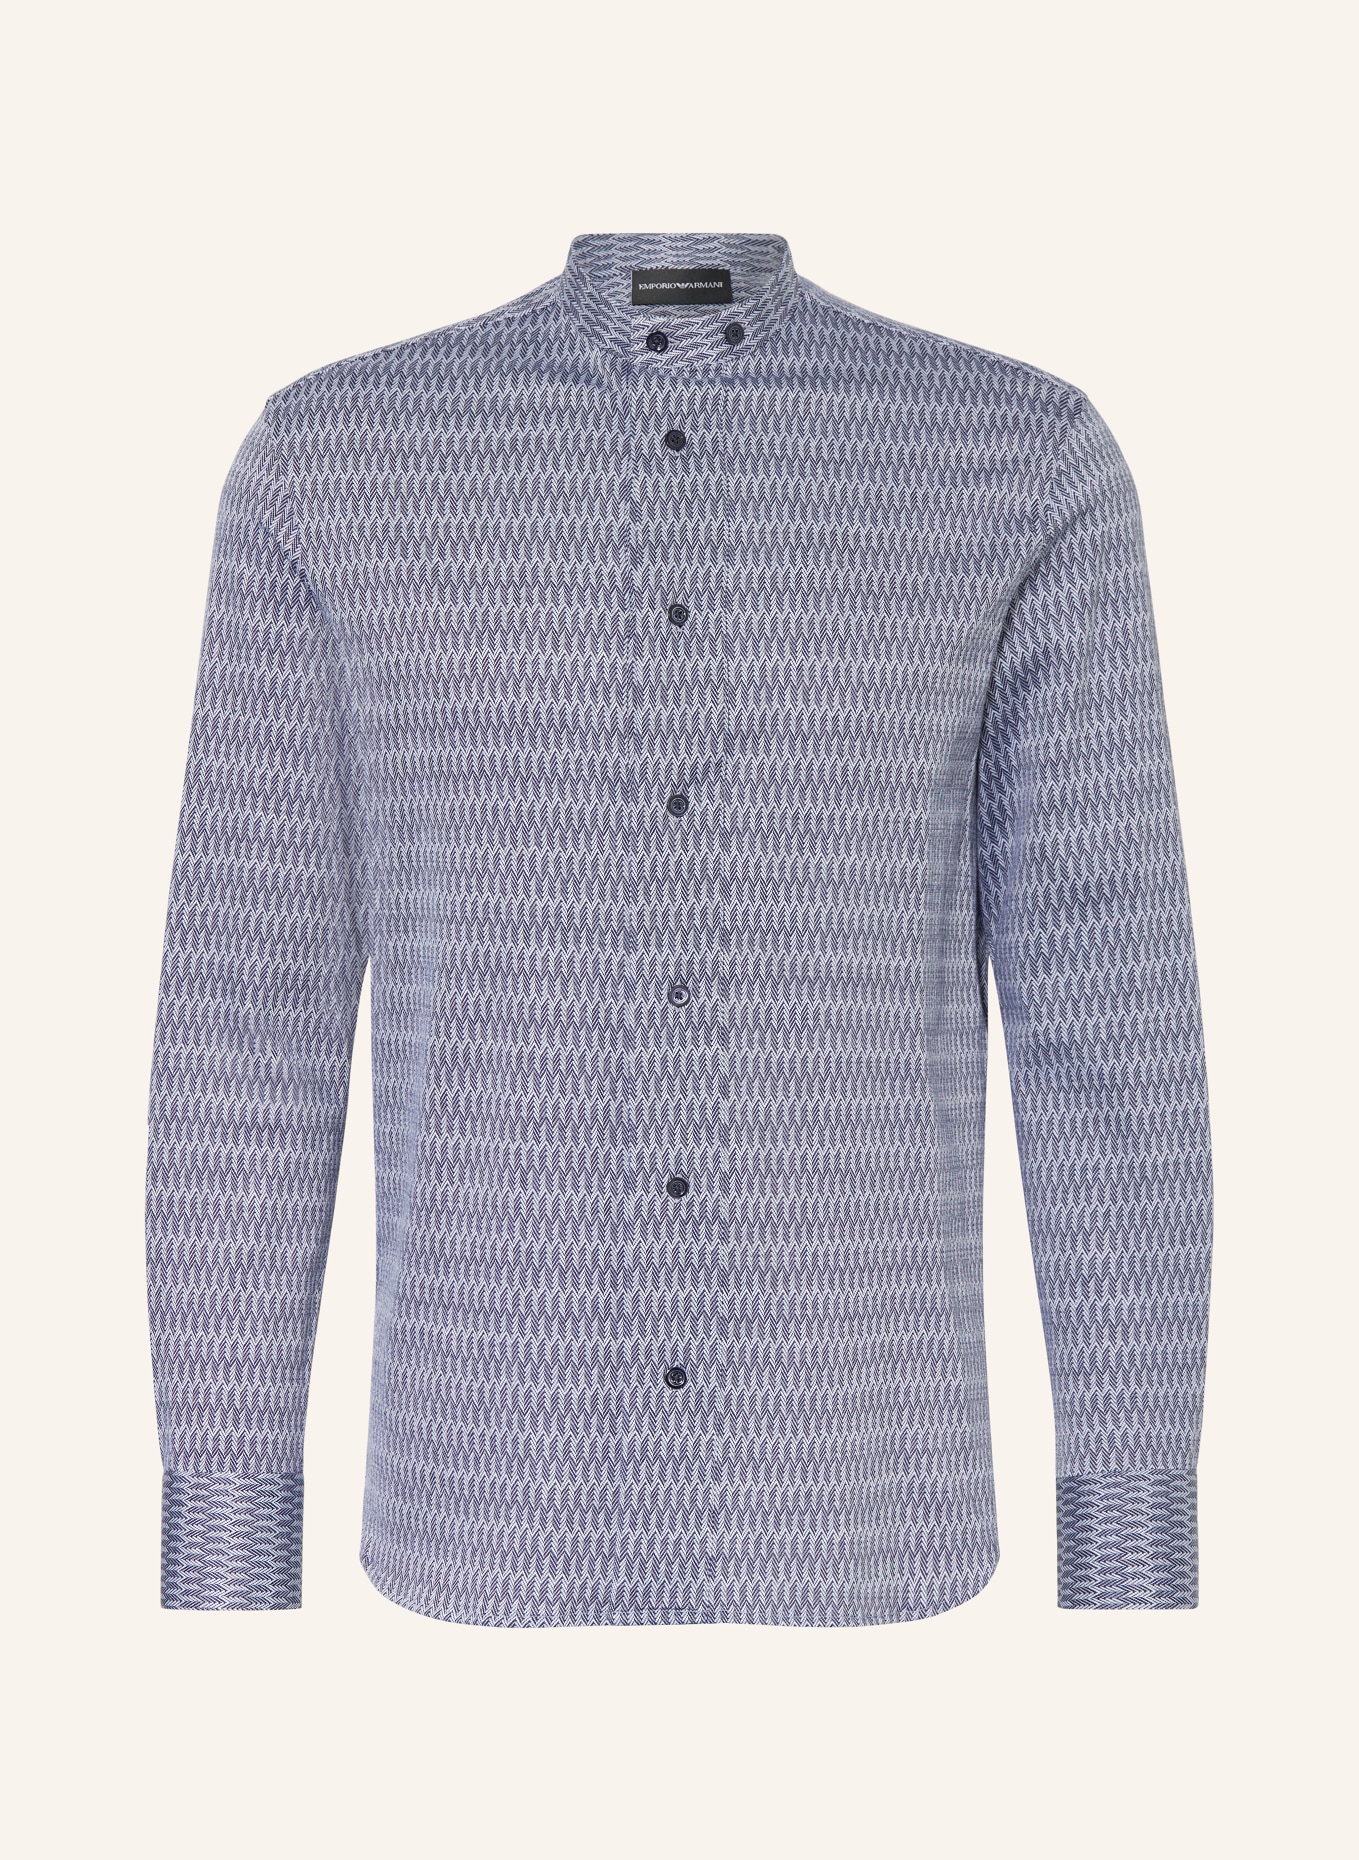 EMPORIO ARMANI Hemd Regular Fit mit Stehkragen, Farbe: DUNKELBLAU/ WEISS (Bild 1)